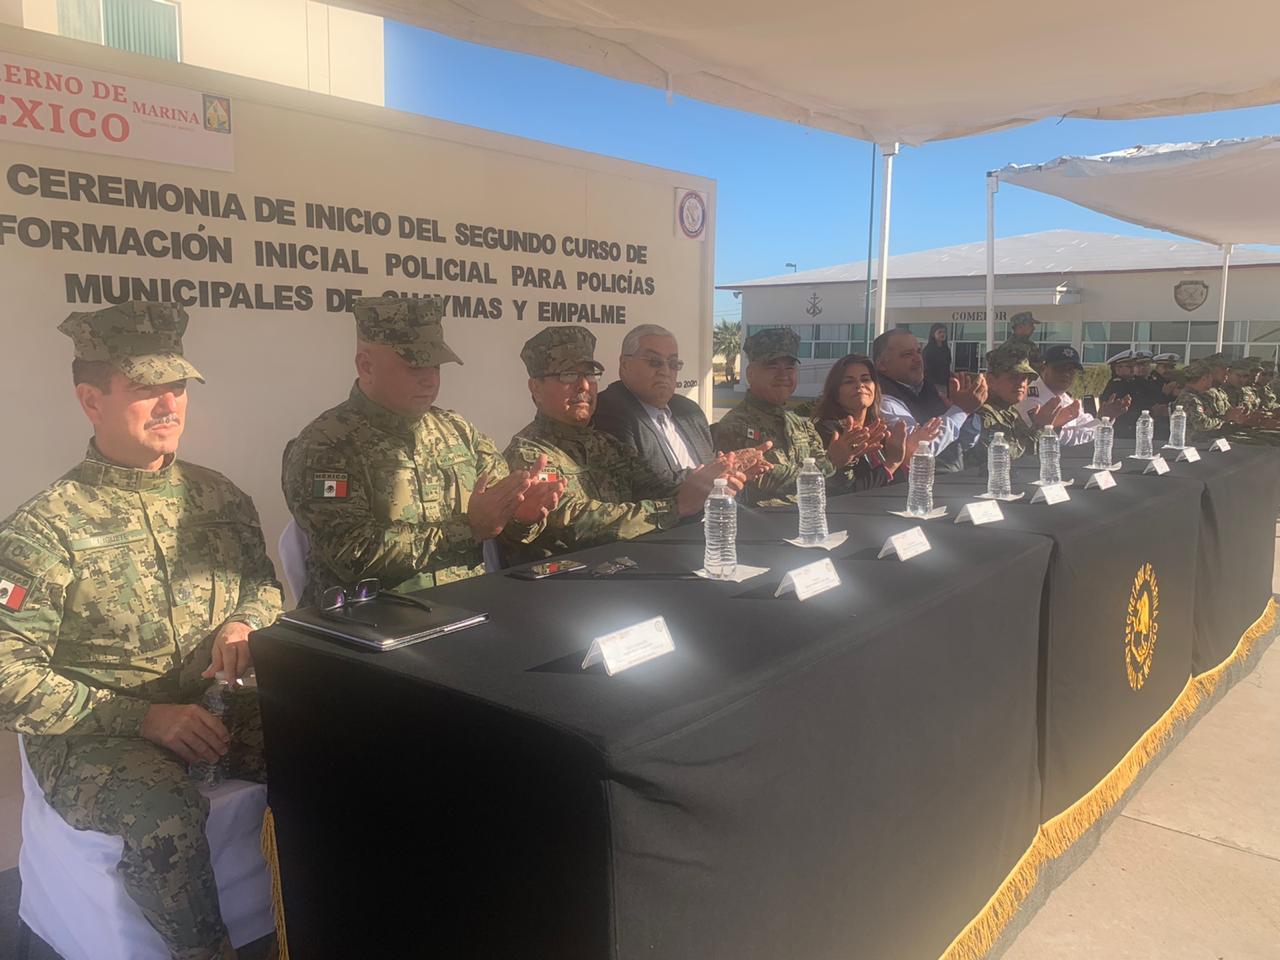 Inicia curso de formación policial para policías de Guaymas y Empalme